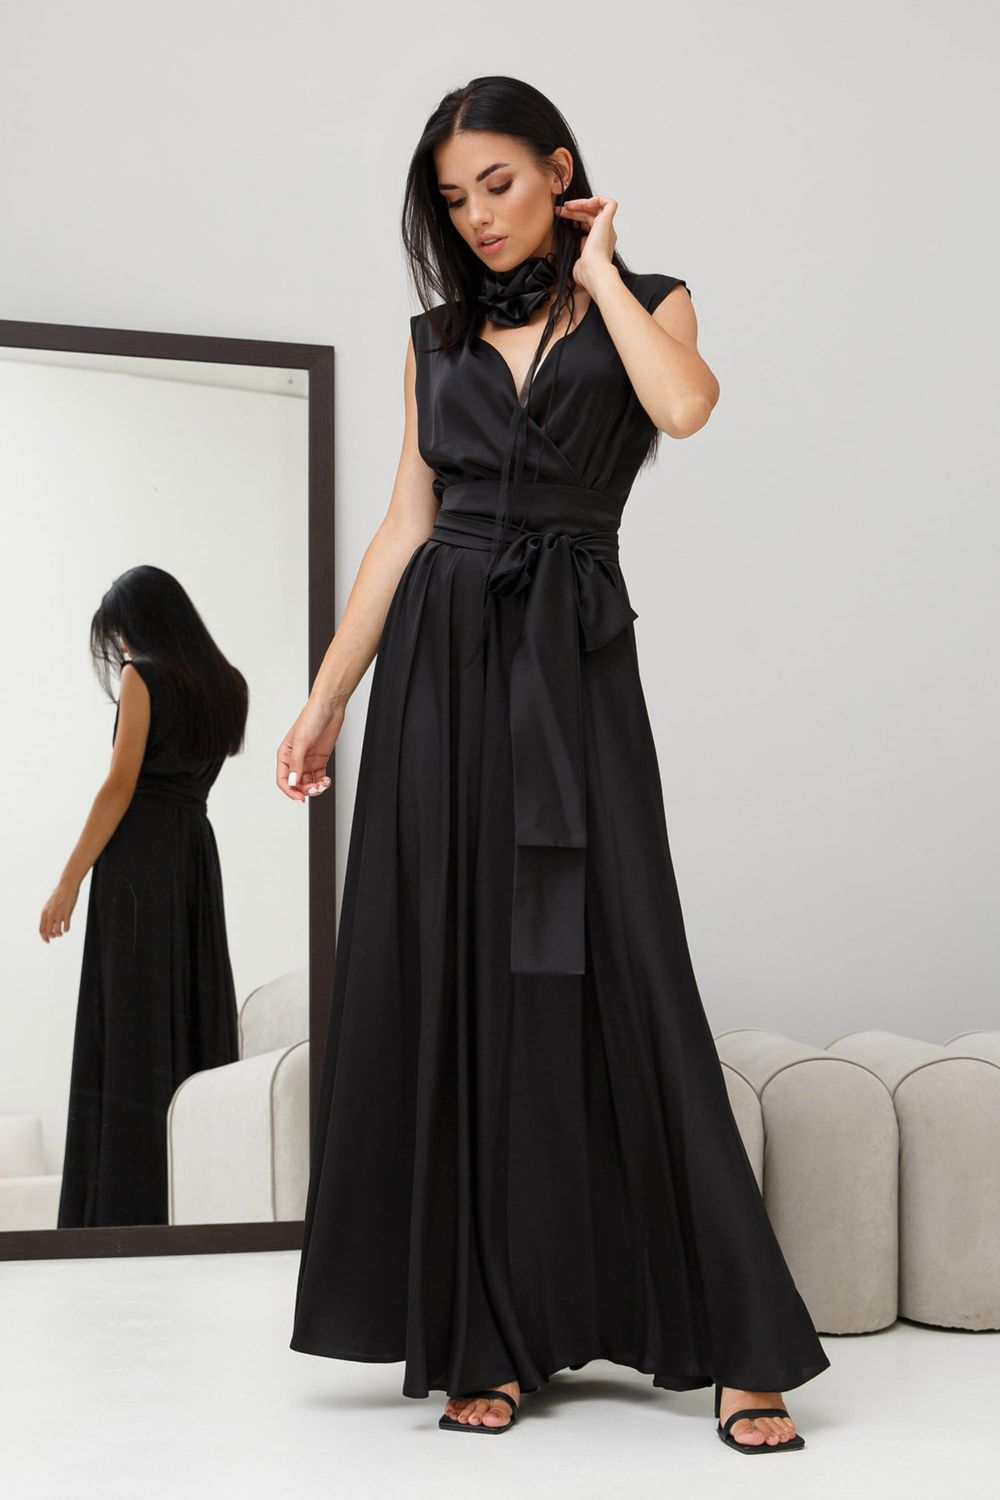 Вишукана вечірня сукня з шовку чорного кольору - фото